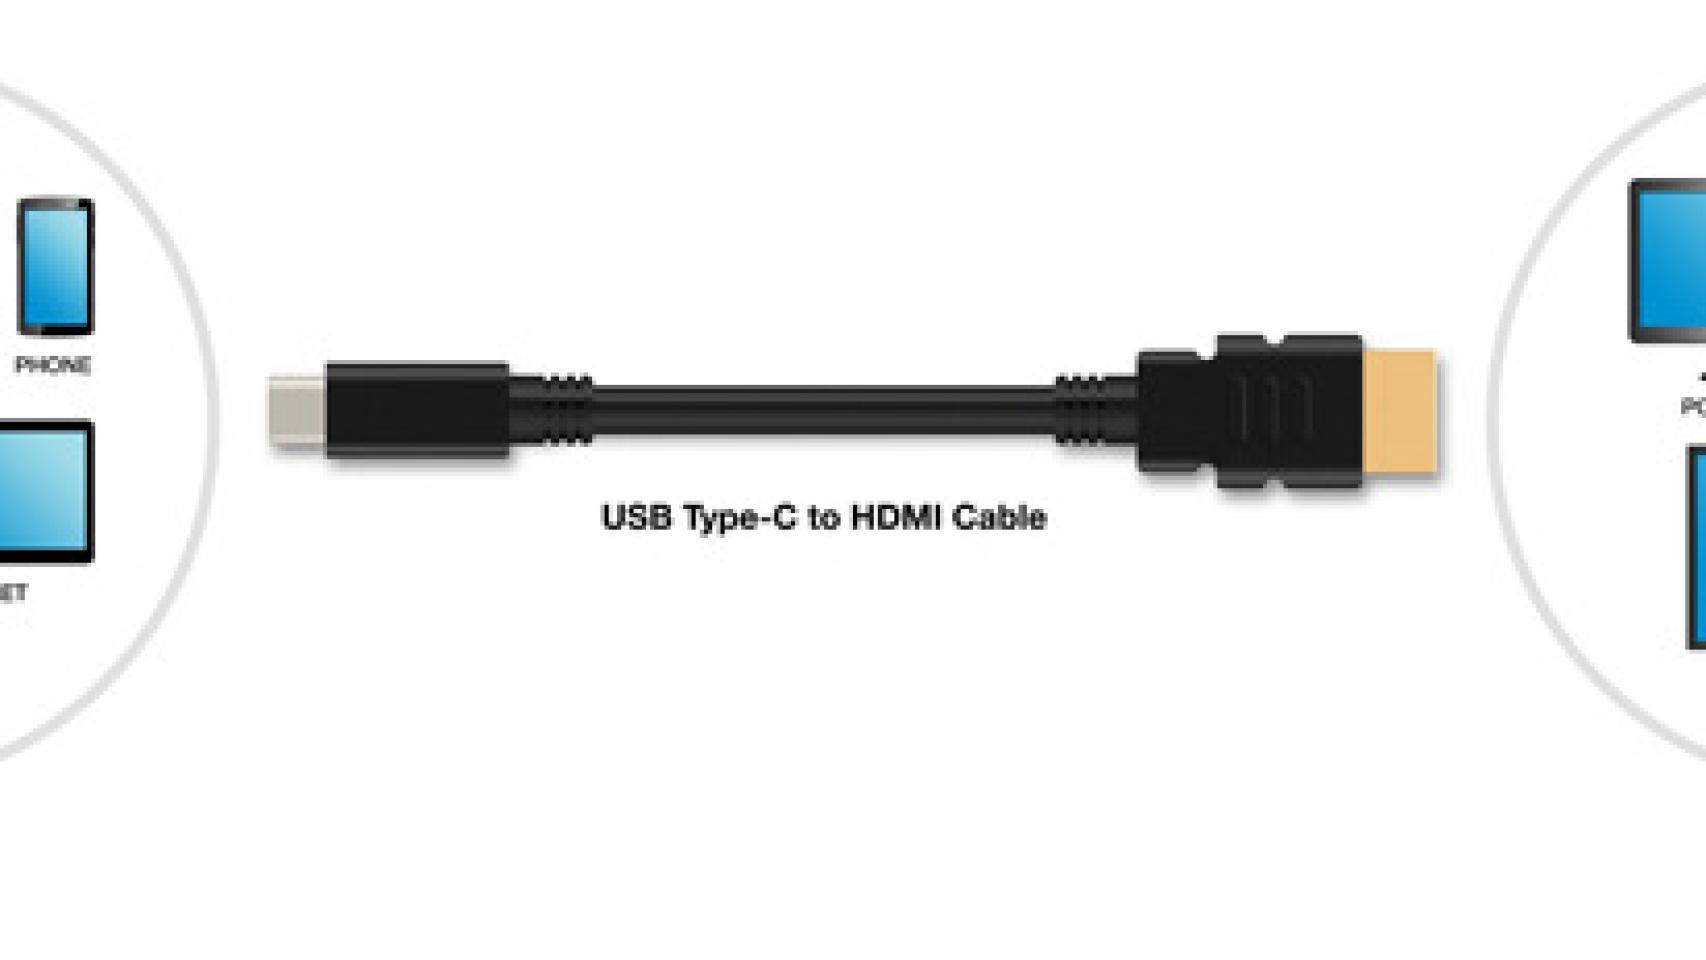 Un motivo más para recibir con los brazos abiertos el USB Tipo-C: el HDMI